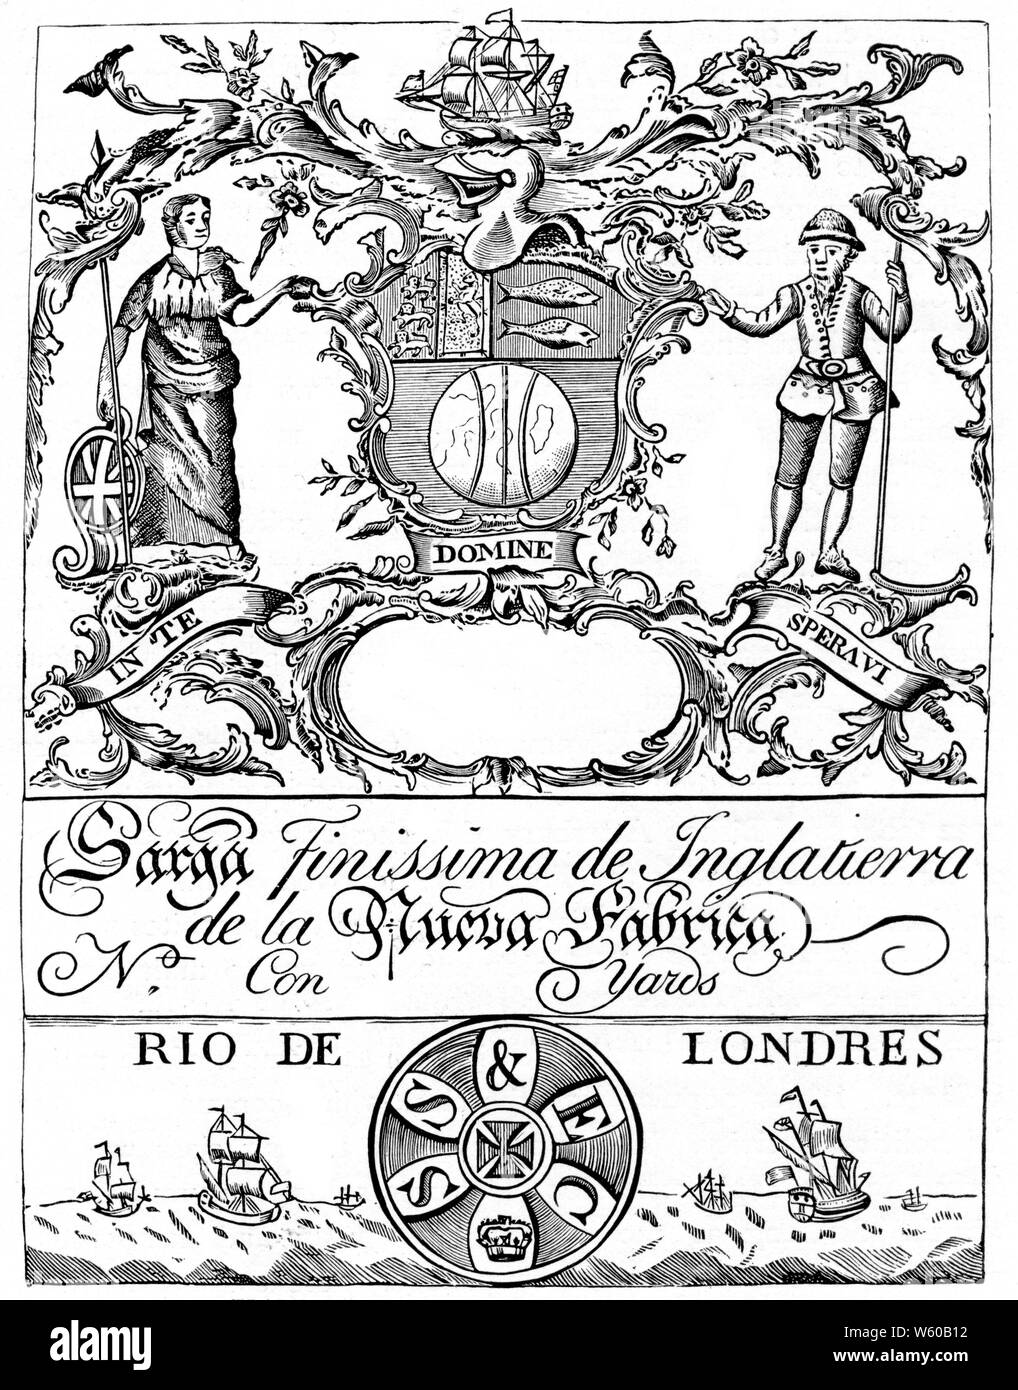 Etiqueta comercial de la Compañía del Mar del Sur, c del siglo XVIII. La South Sea Company fue fundada en 1711 con miras a la reestructuración de la deuda pública y restablecer el crédito público. Foto de stock